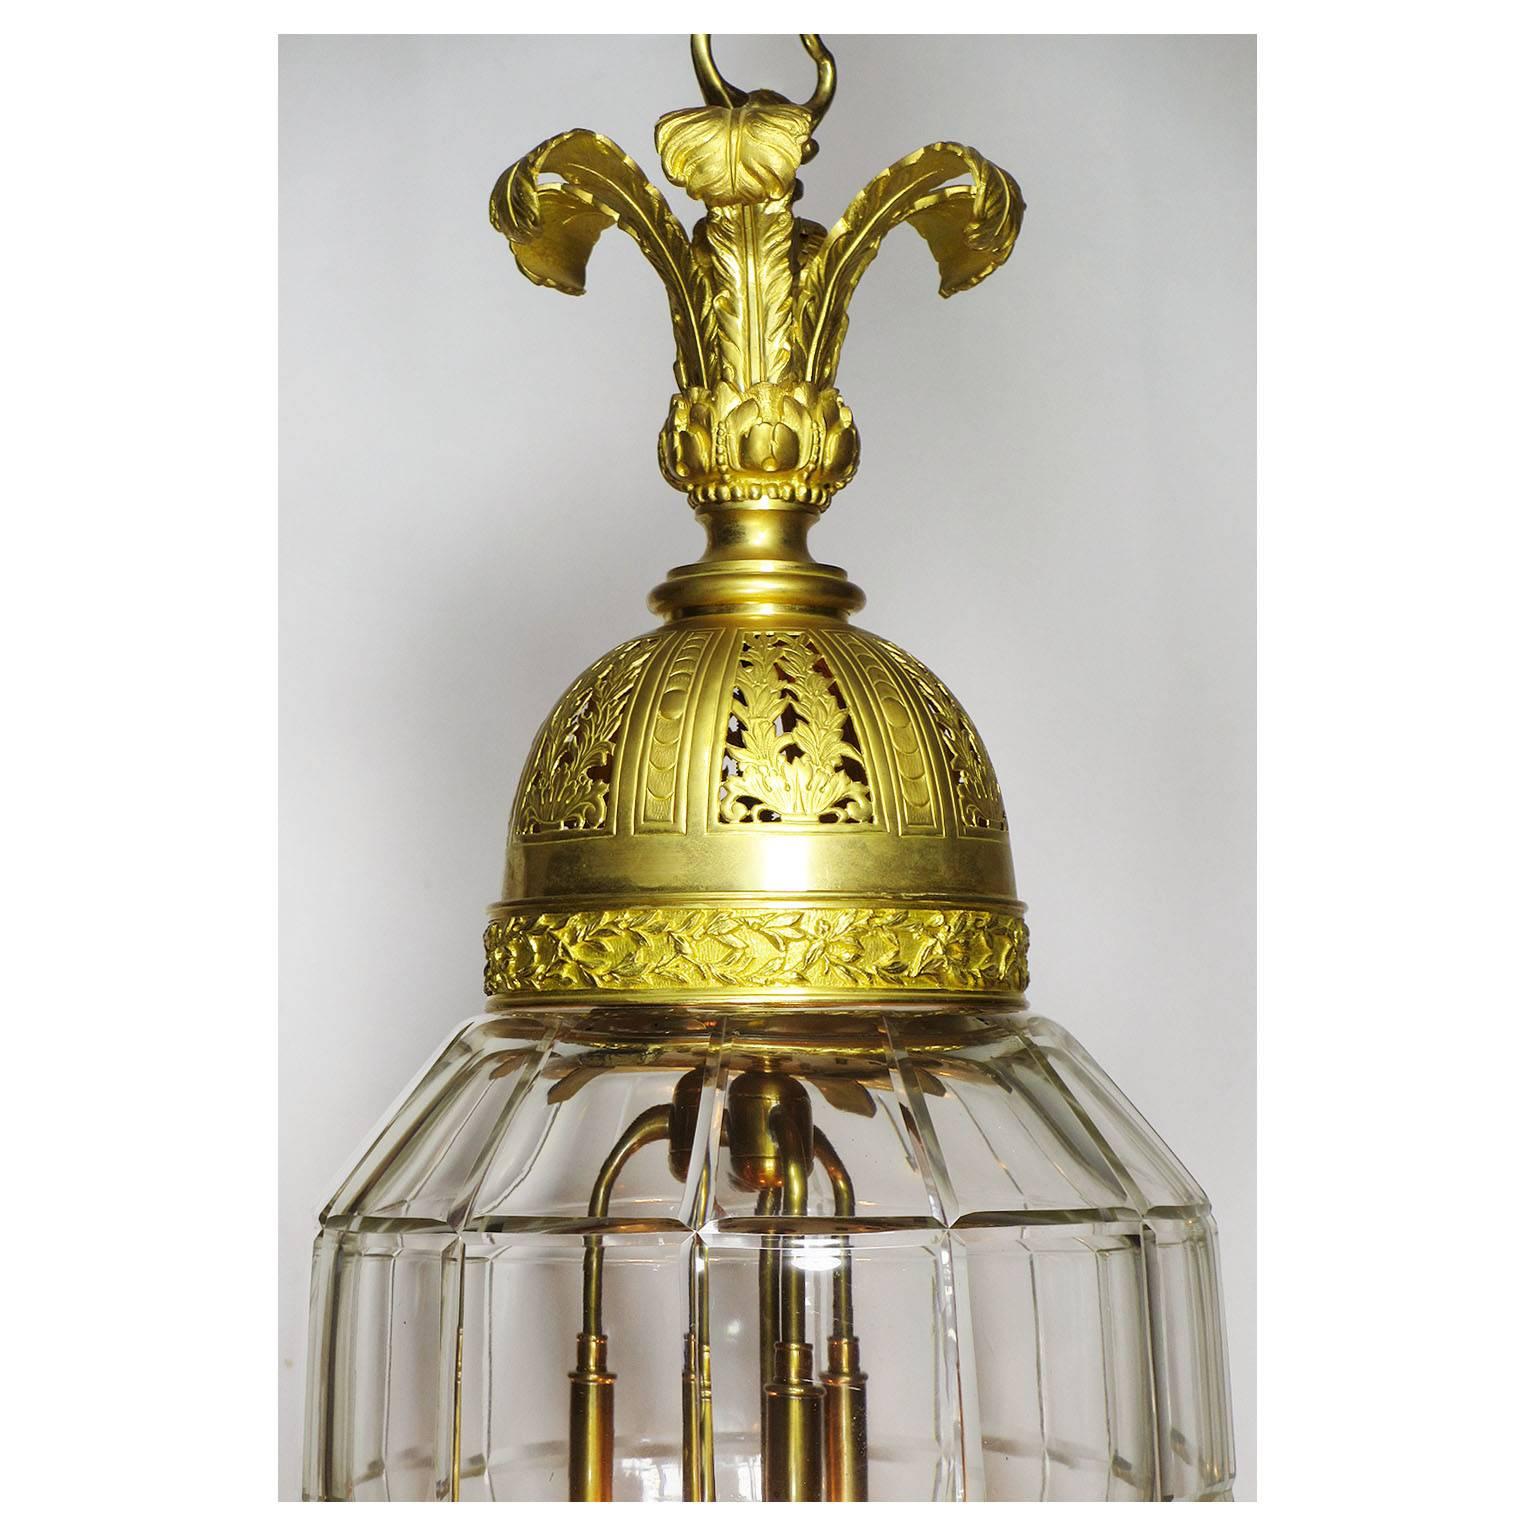 Eine schöne französische vergoldete Bronzelaterne im Stil der Belle Époque (19.-20. Jahrhundert) mit vier Leuchten, die Baccarat, Paris, um 1900 zugeschrieben wird.
Maßnahmen:
Höhe: 33 1/2 Zoll (85,1 cm).
Breite: 12 Zoll (30,5